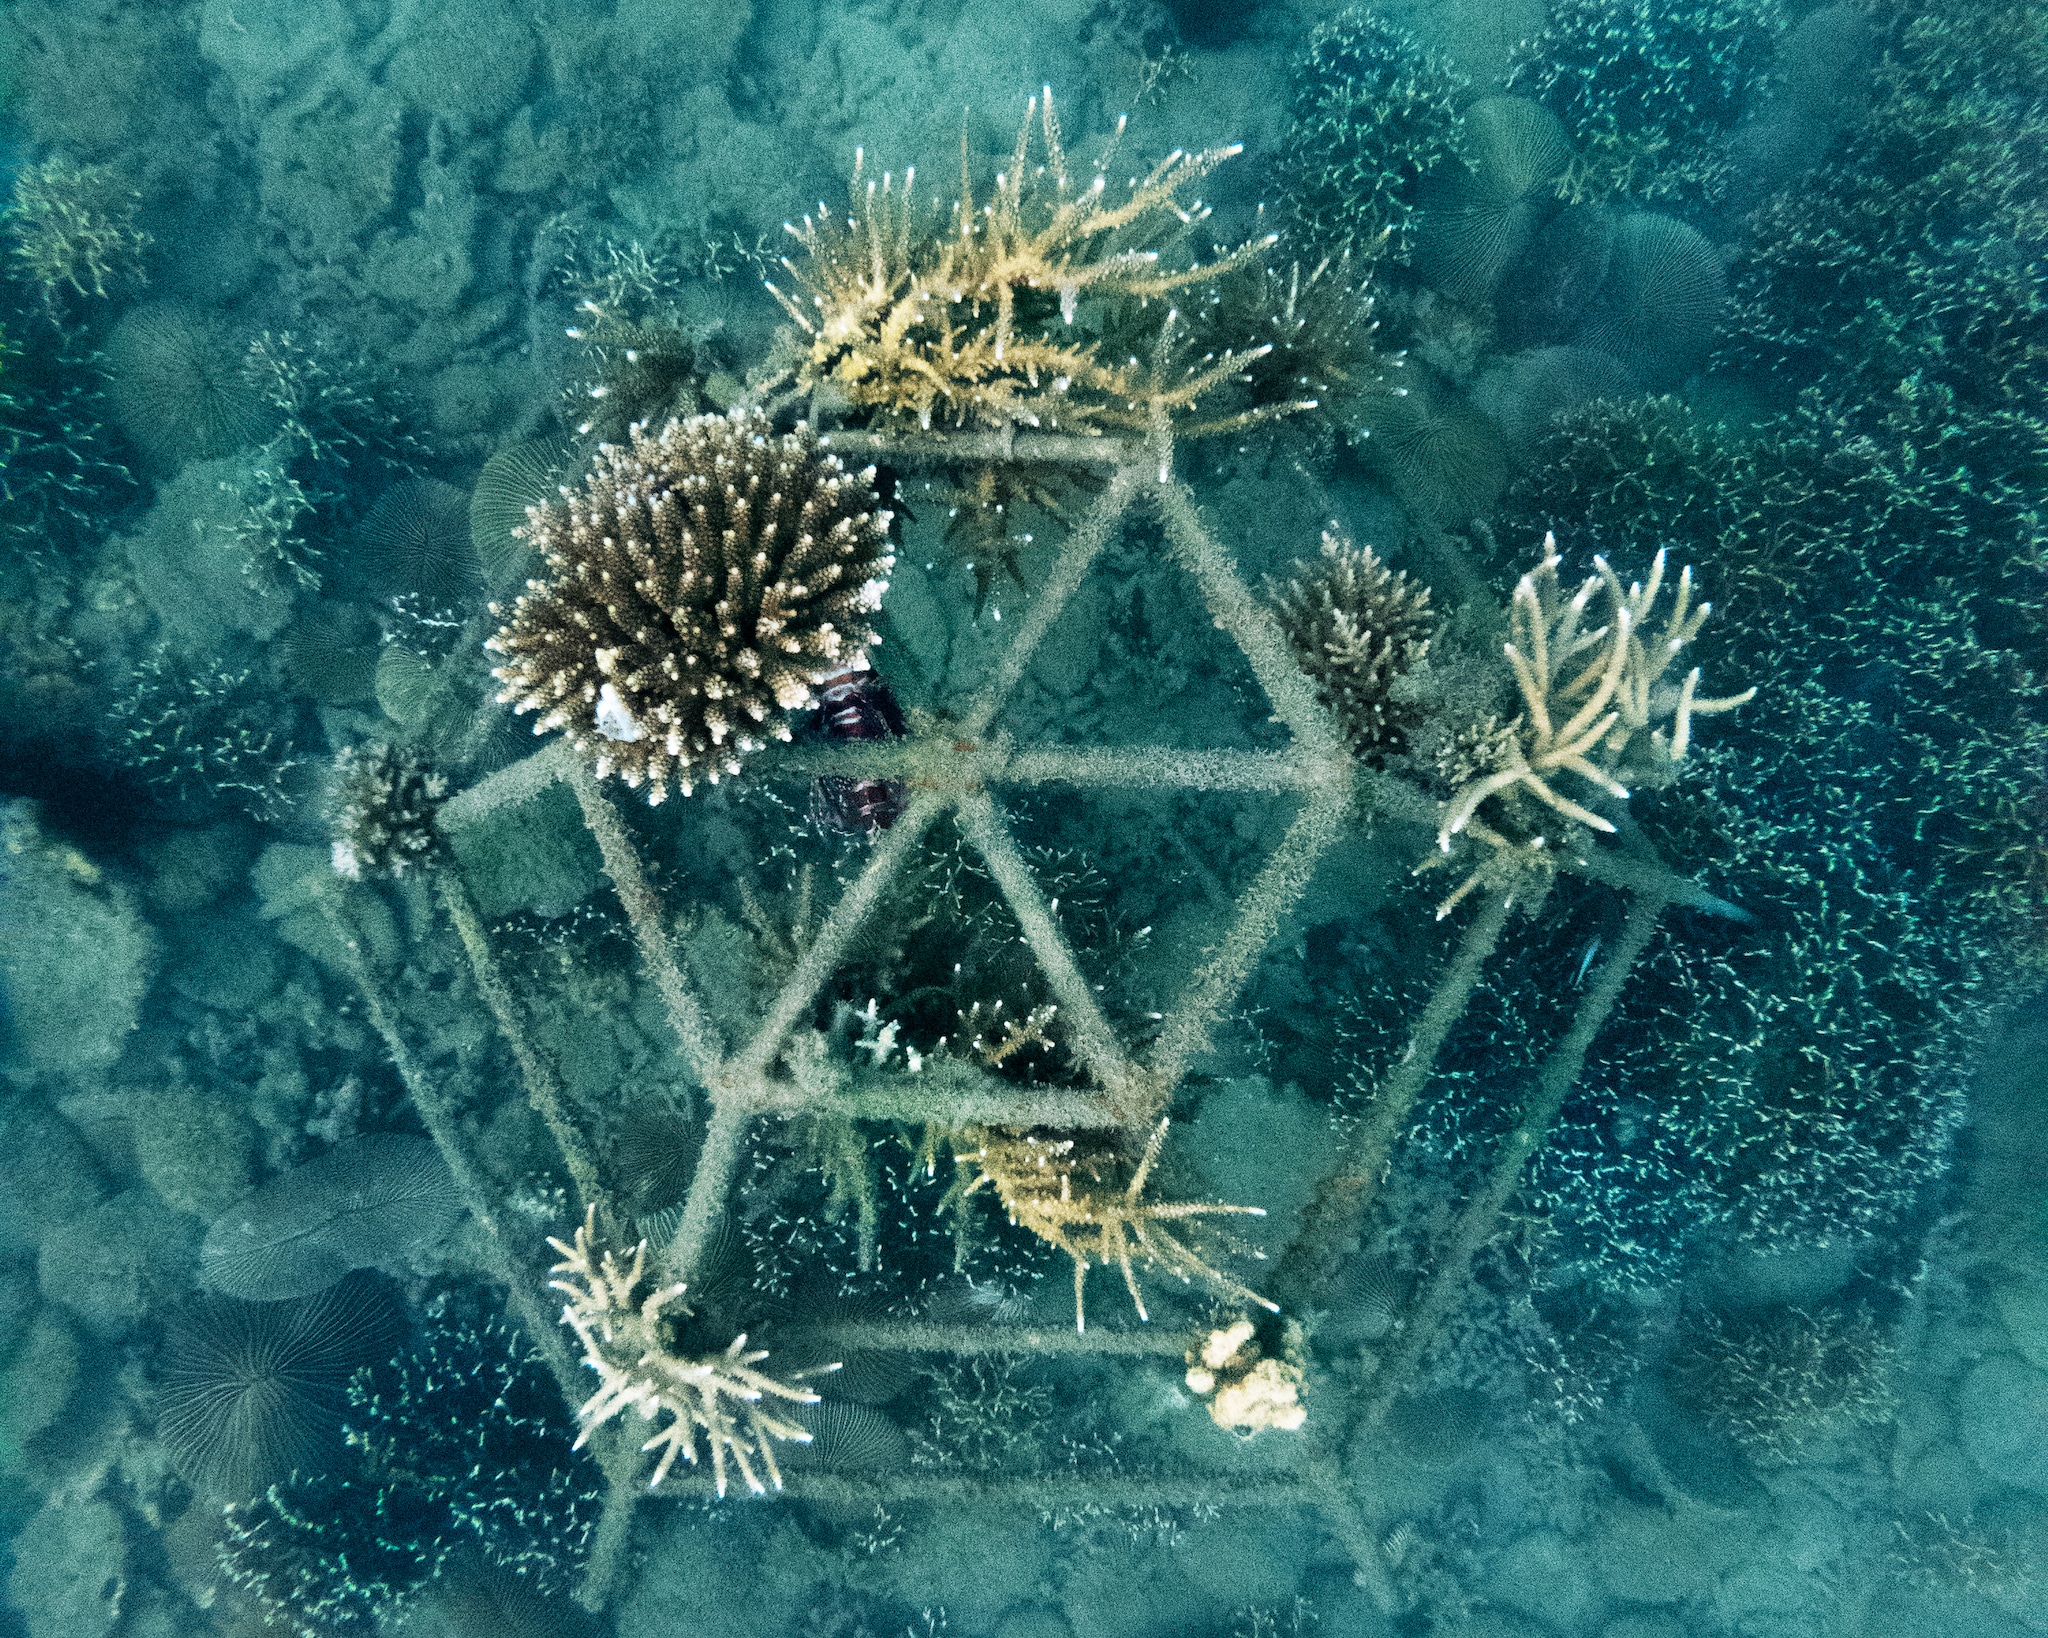 Corals growing on metal frame underwater